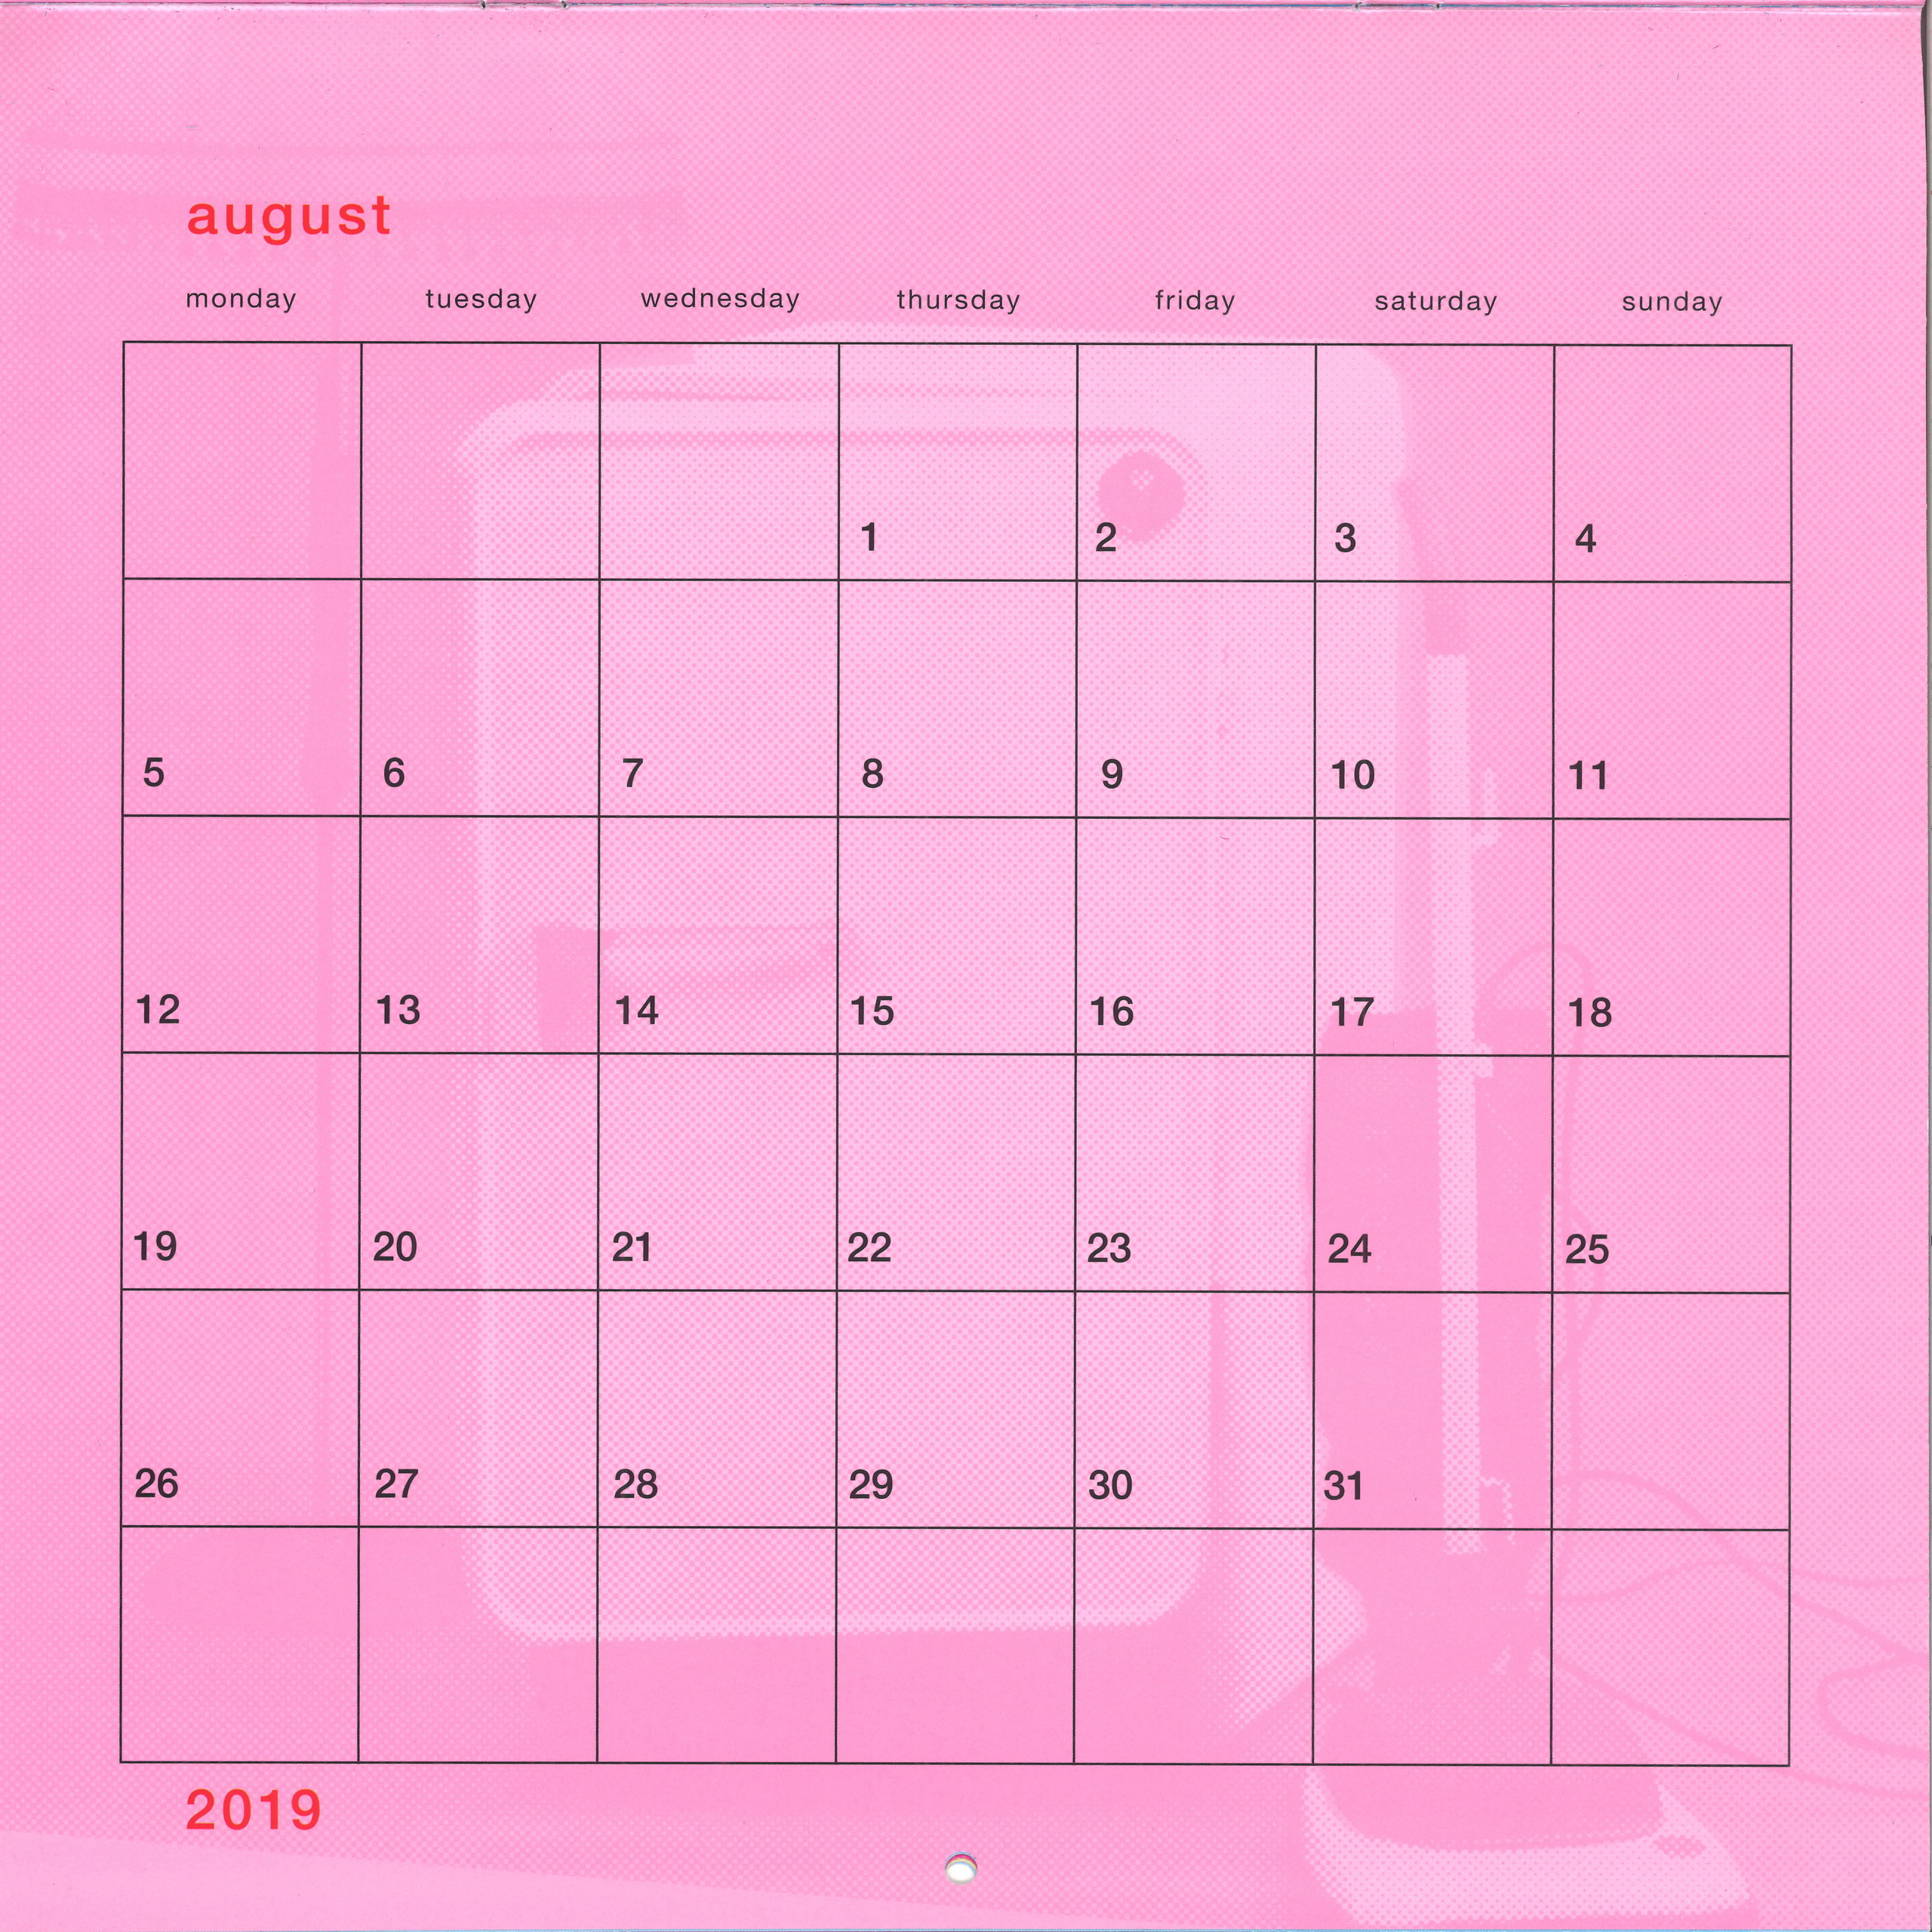 20190101-calendar-official-uk-008b